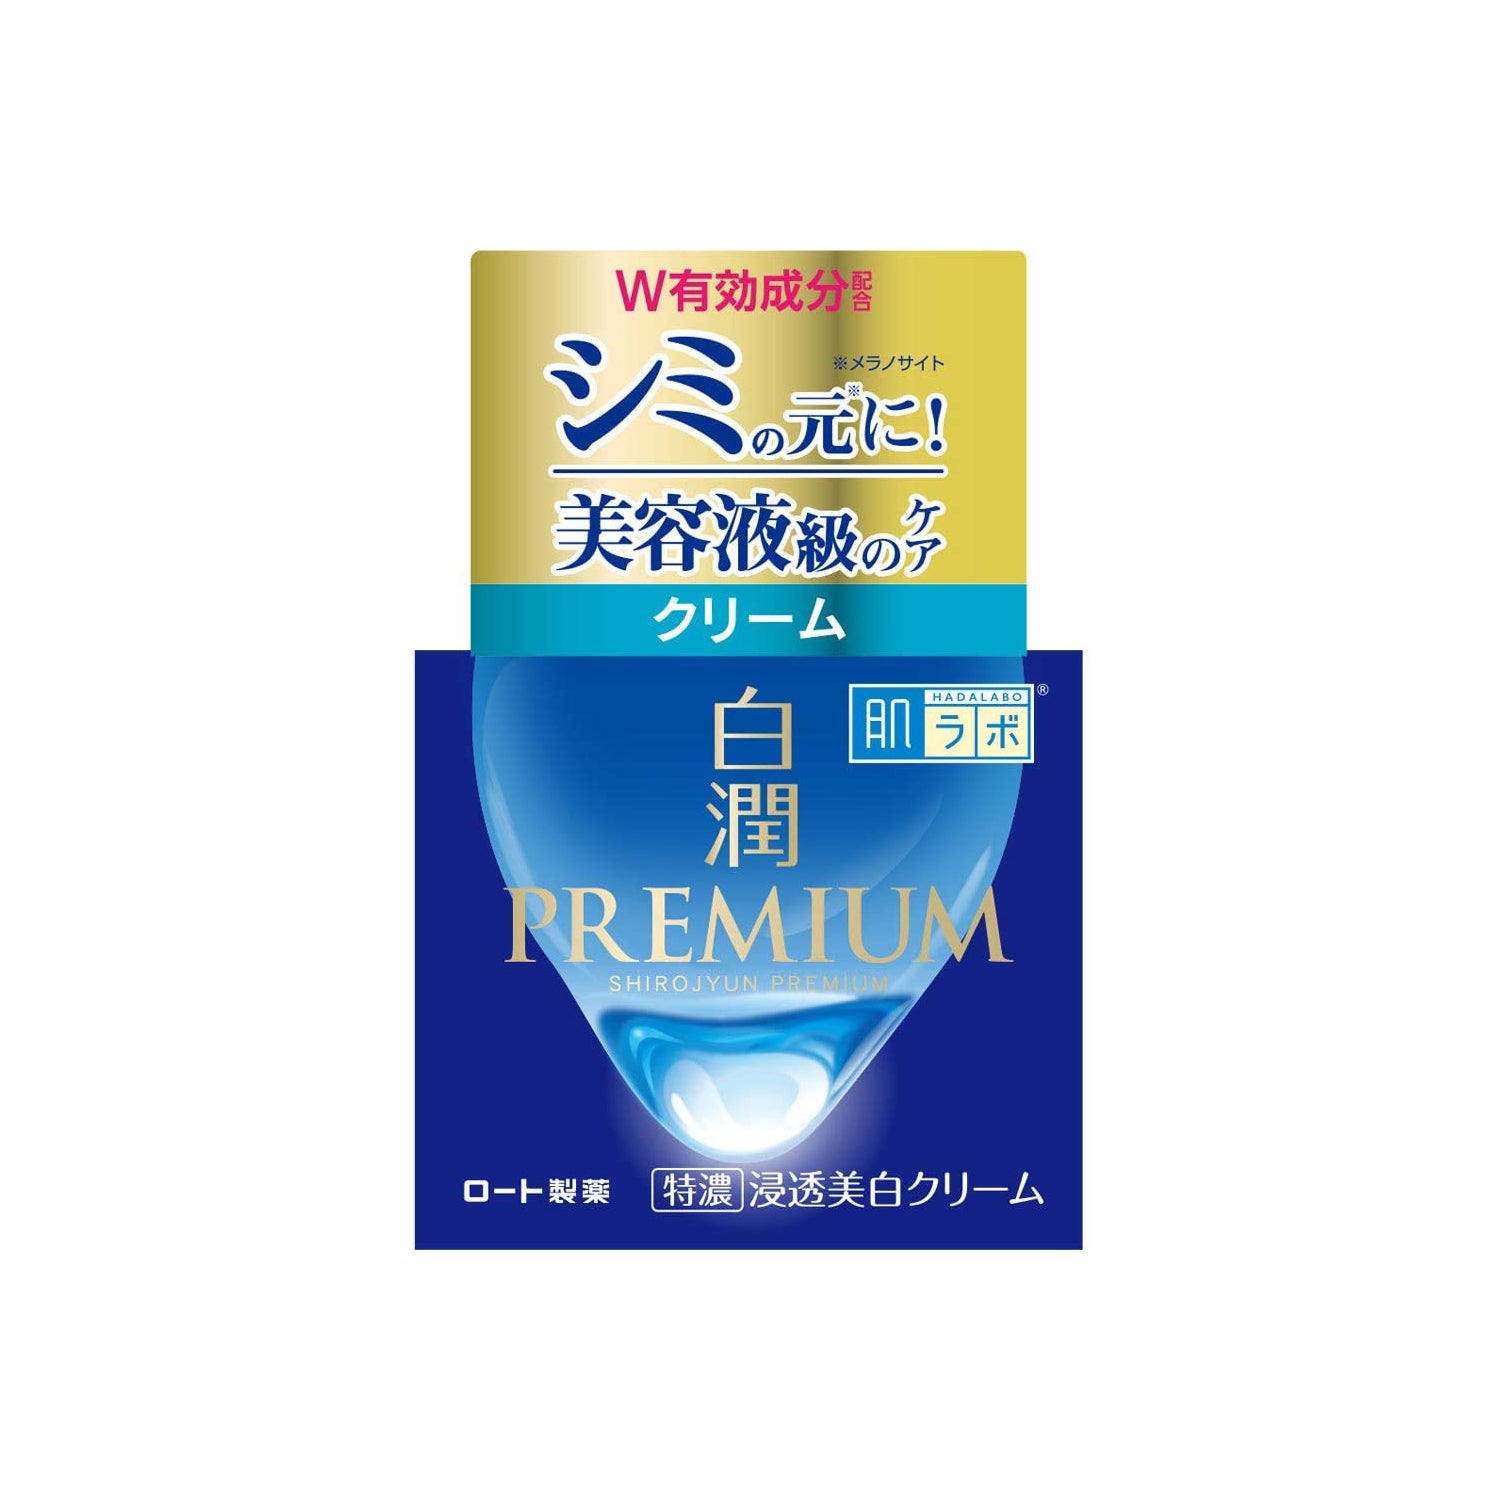 Rohto Hadalabo Shirojyun Premium Brightening Cream Beauty Rohto   